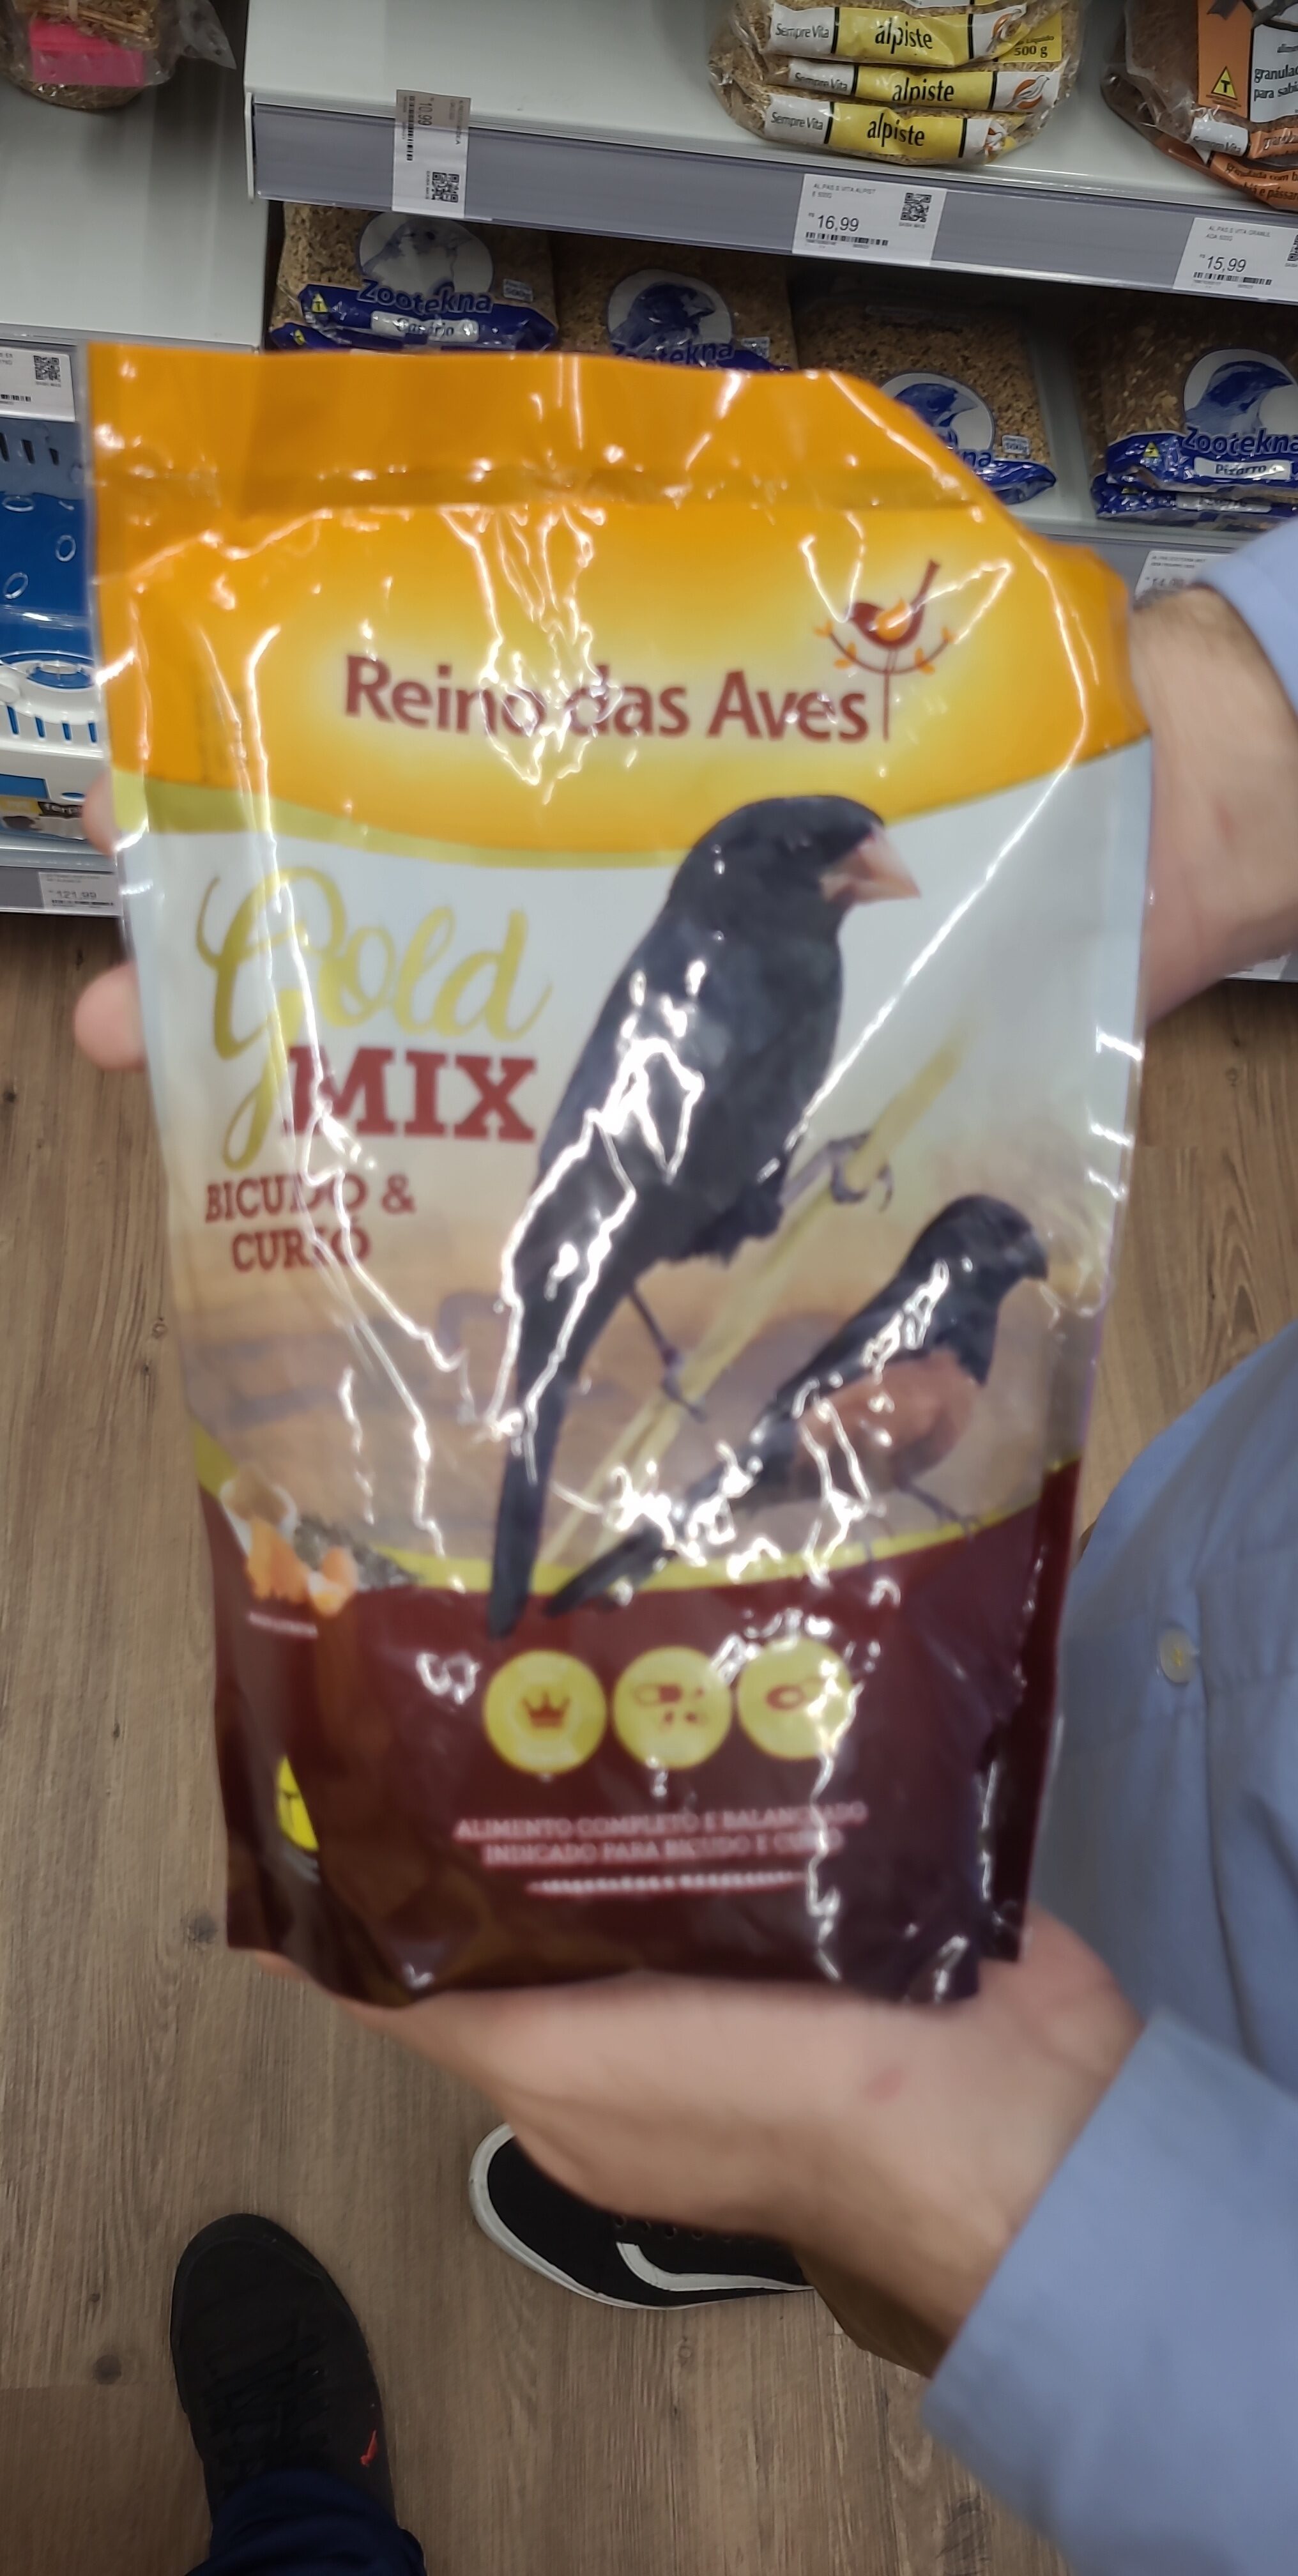 Ração pássaro gold mix bicudo e curio - Product - pt